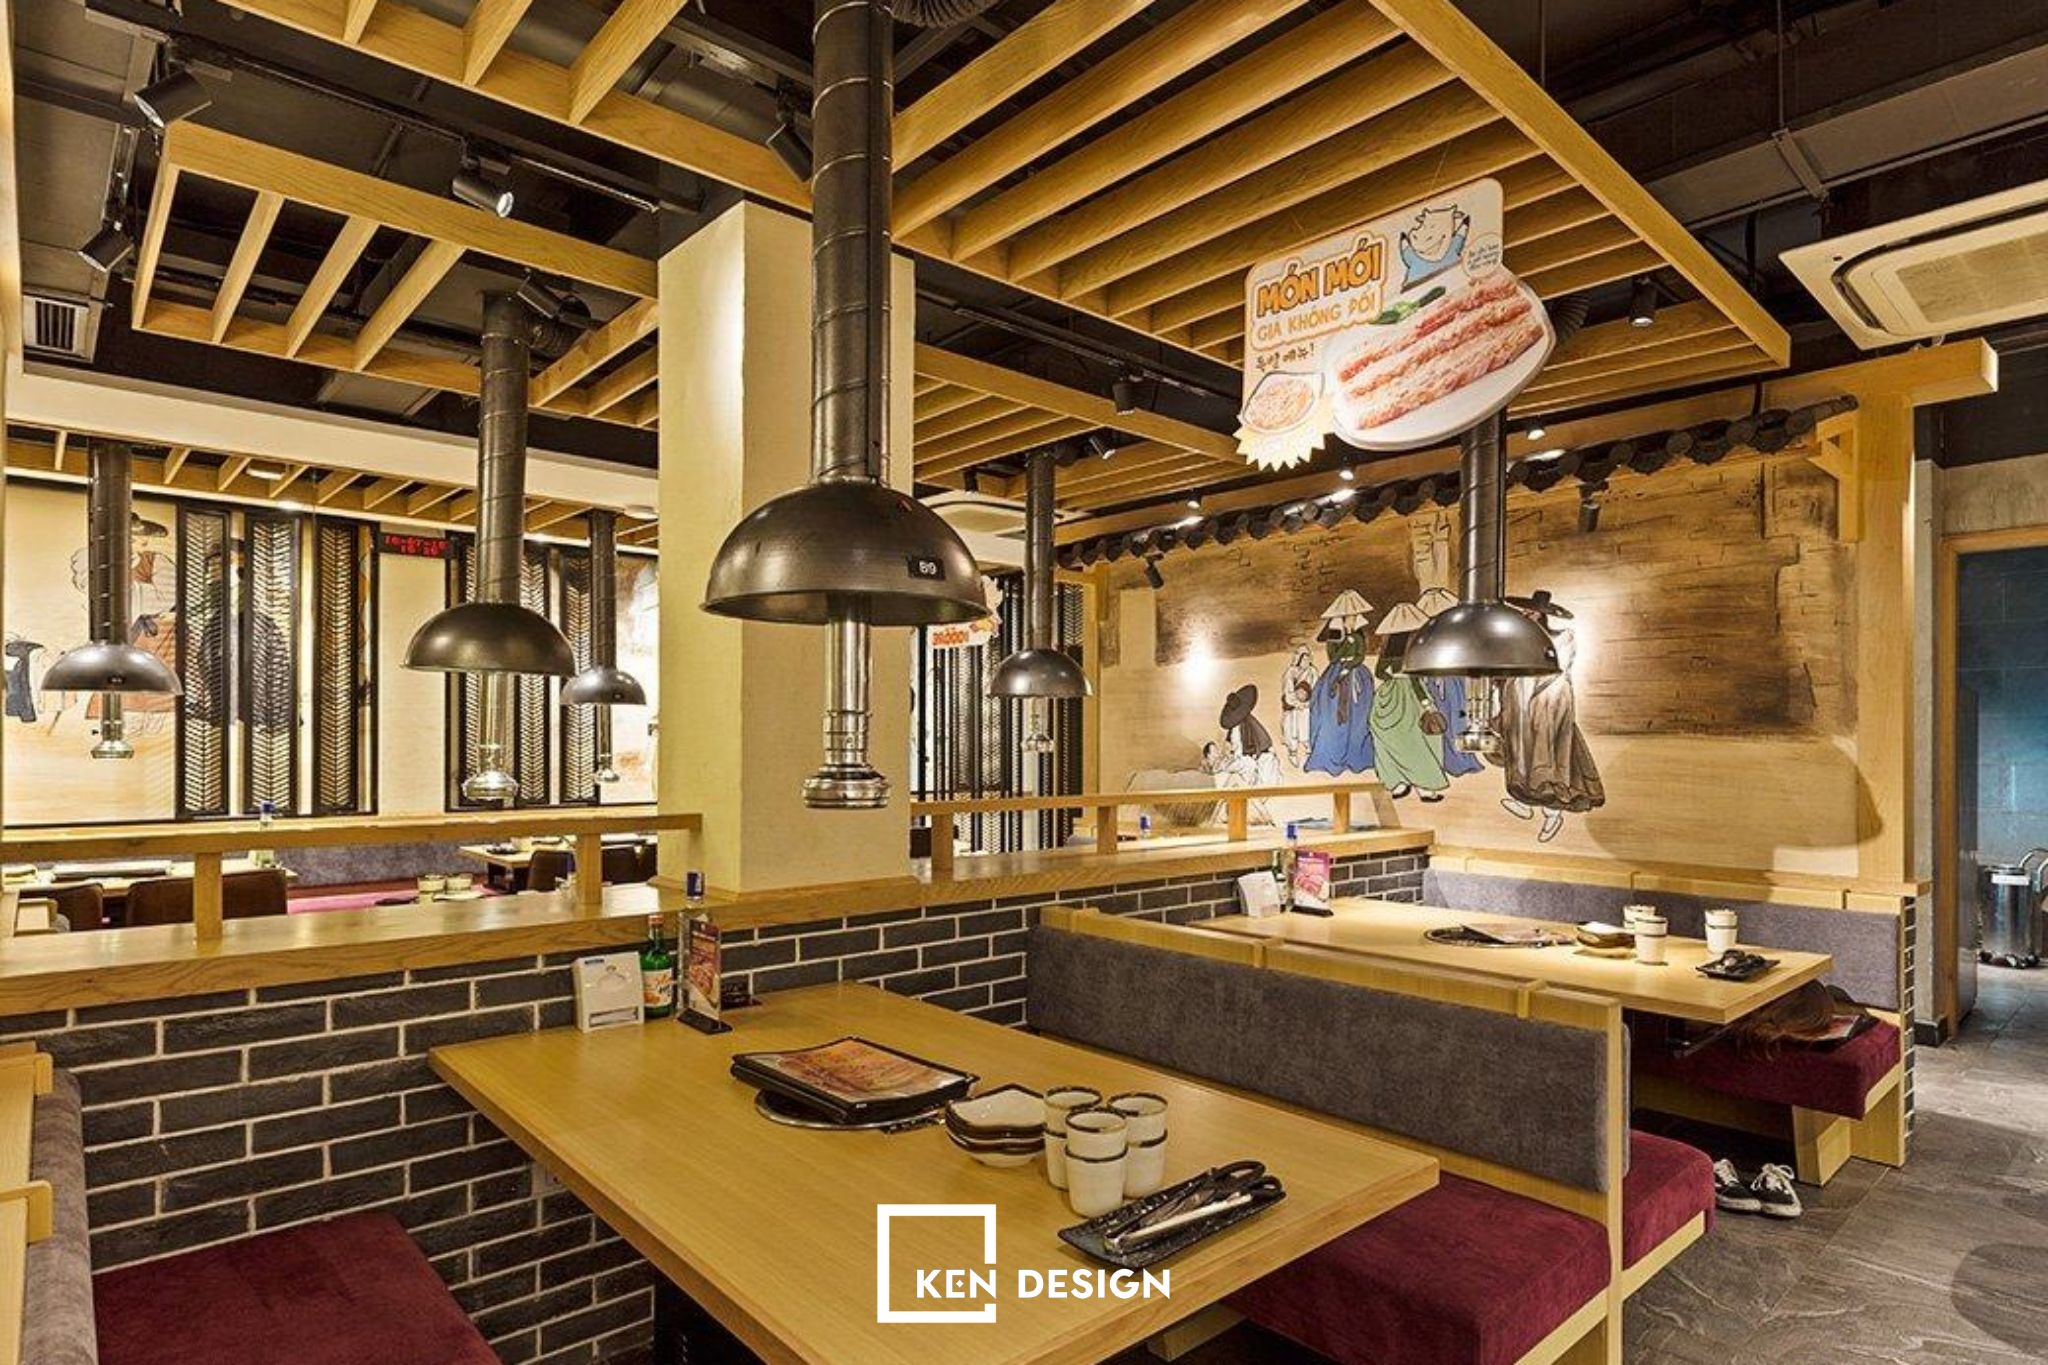 Nội thất bằng gỗ ép tự nhiên có độ bền cao được sử dụng trong thiết kế nhà hàng GoGi house